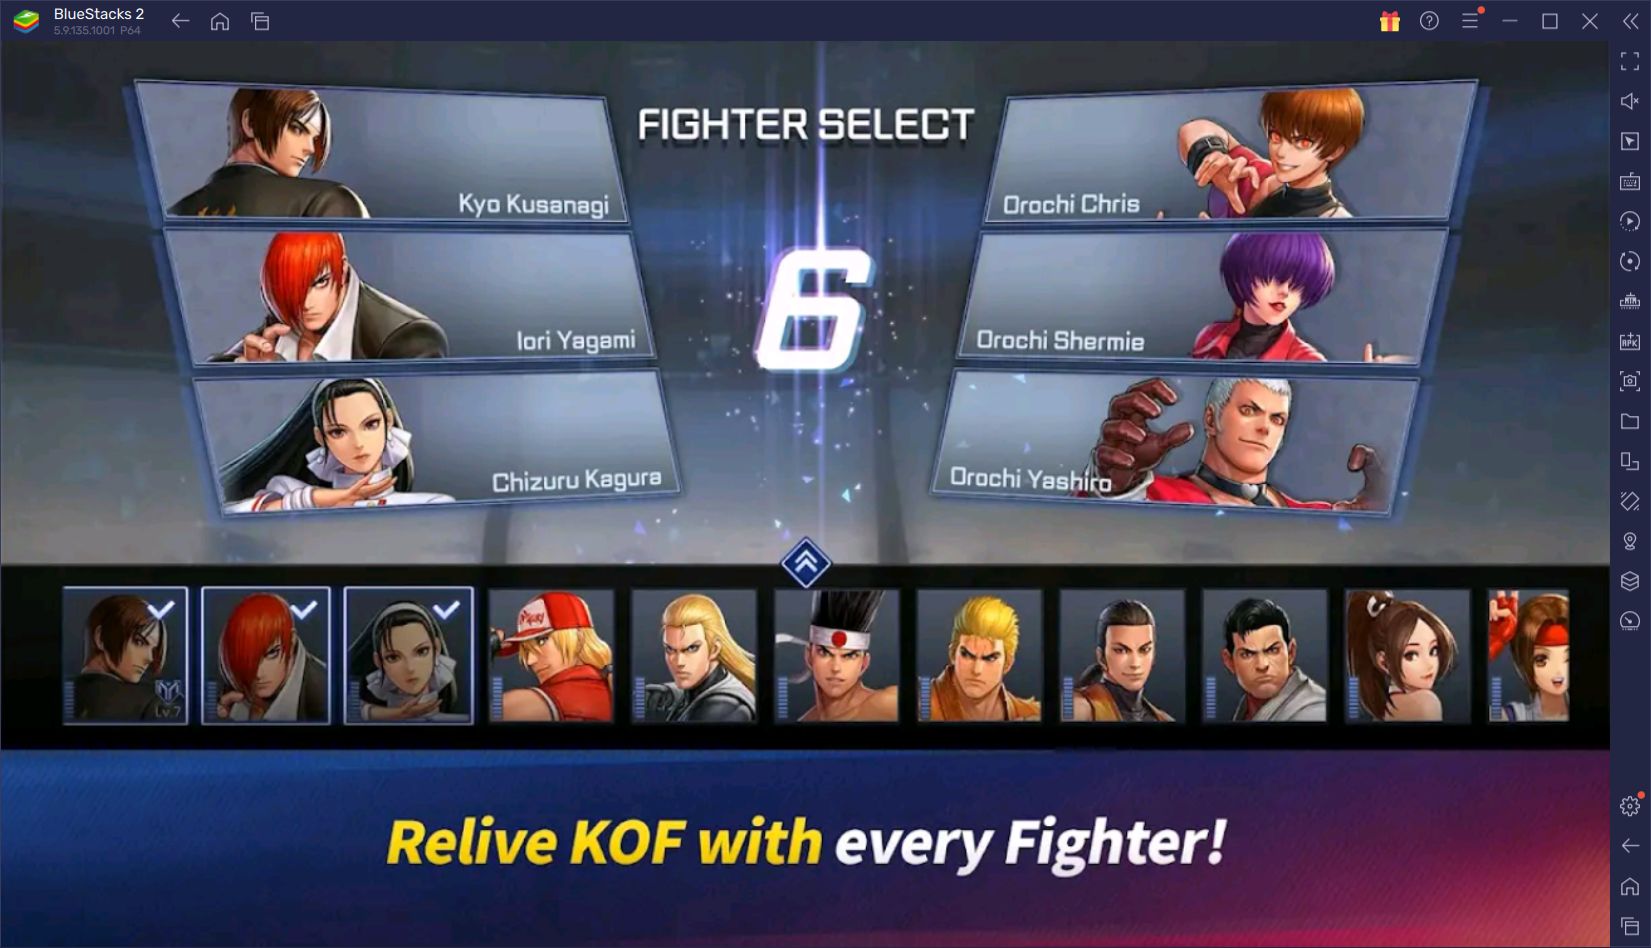 The King of Fighters ARENA Oynamak için BlueStacks Kullanın, Bilgisayarınızda Oynayın